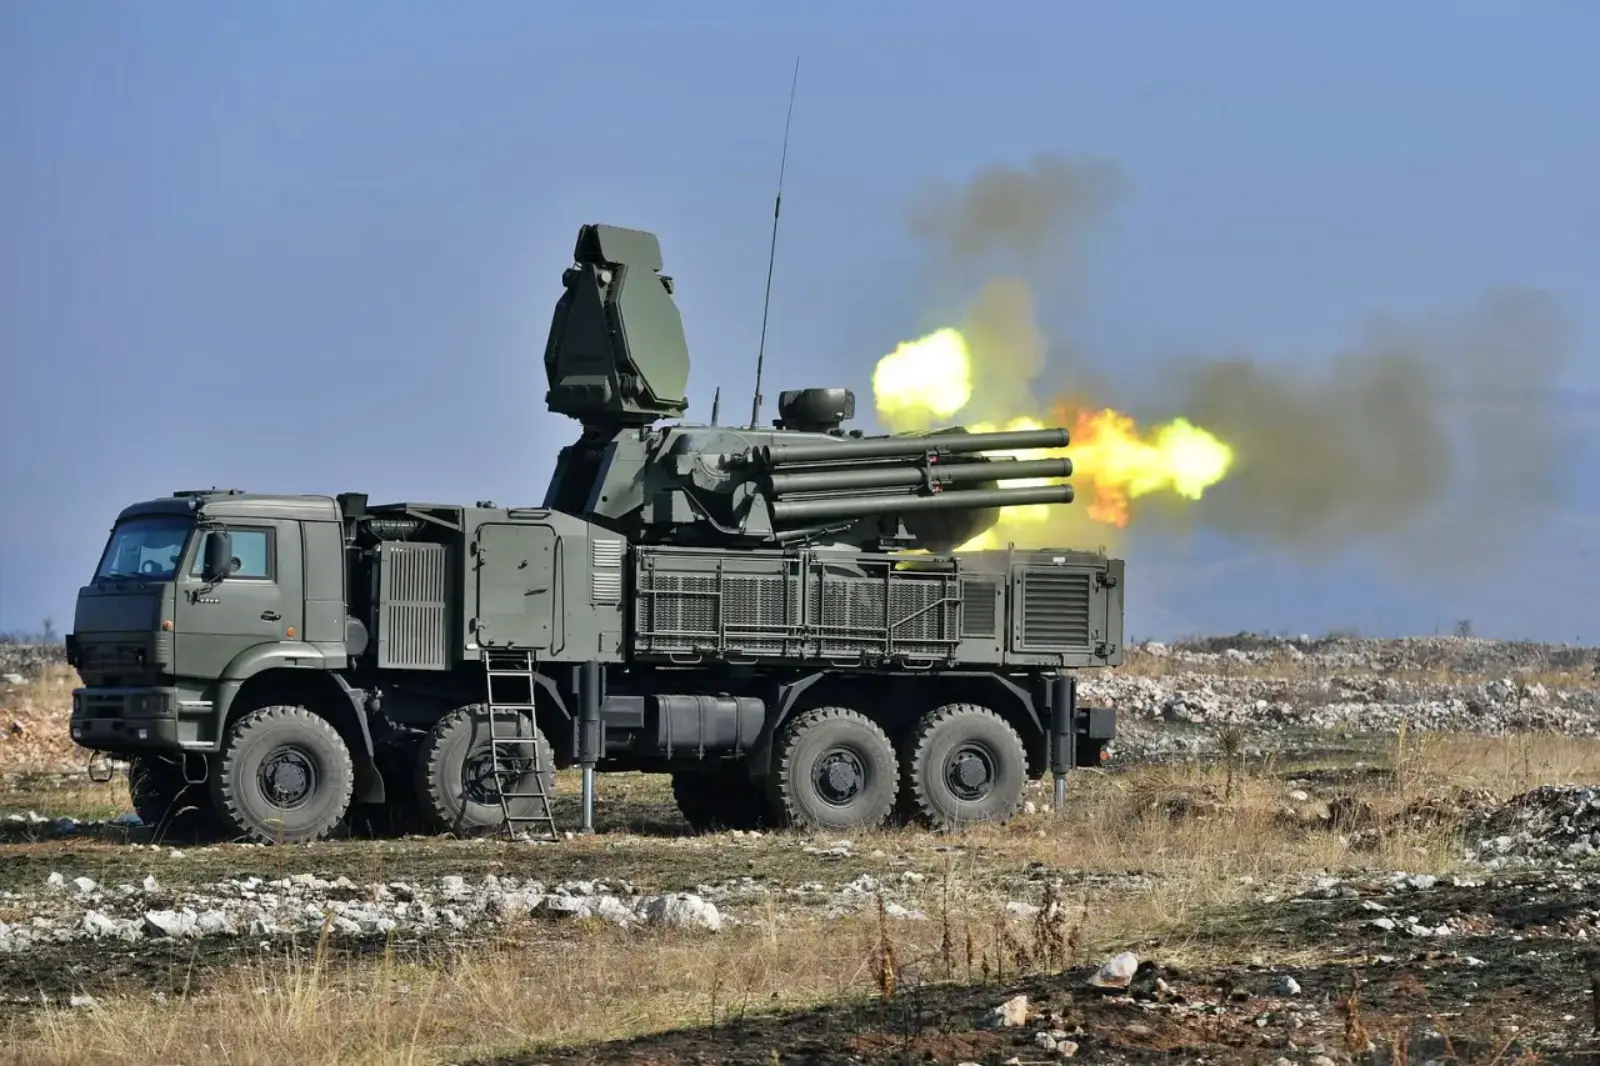 VIDEO Venäläinen ilmapuolustusjärjestelmä hyökkää venäläisiä sotilaita vastaan